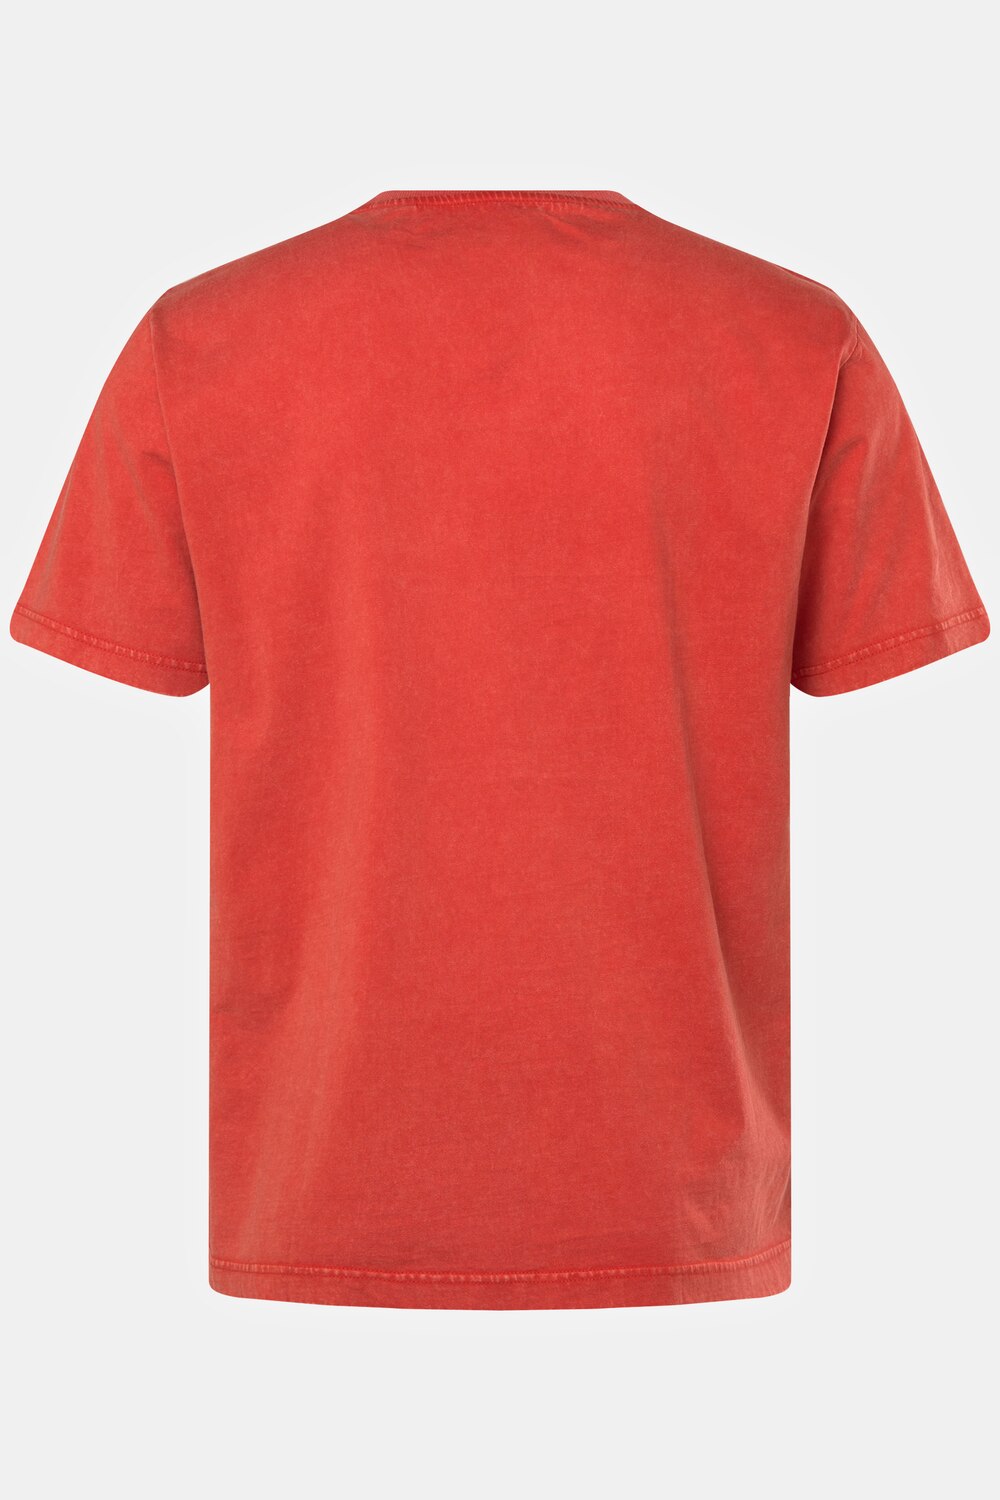 Grote Maten T-shirt, Heren, rood, Maat: 3XL, Katoen, JP1880